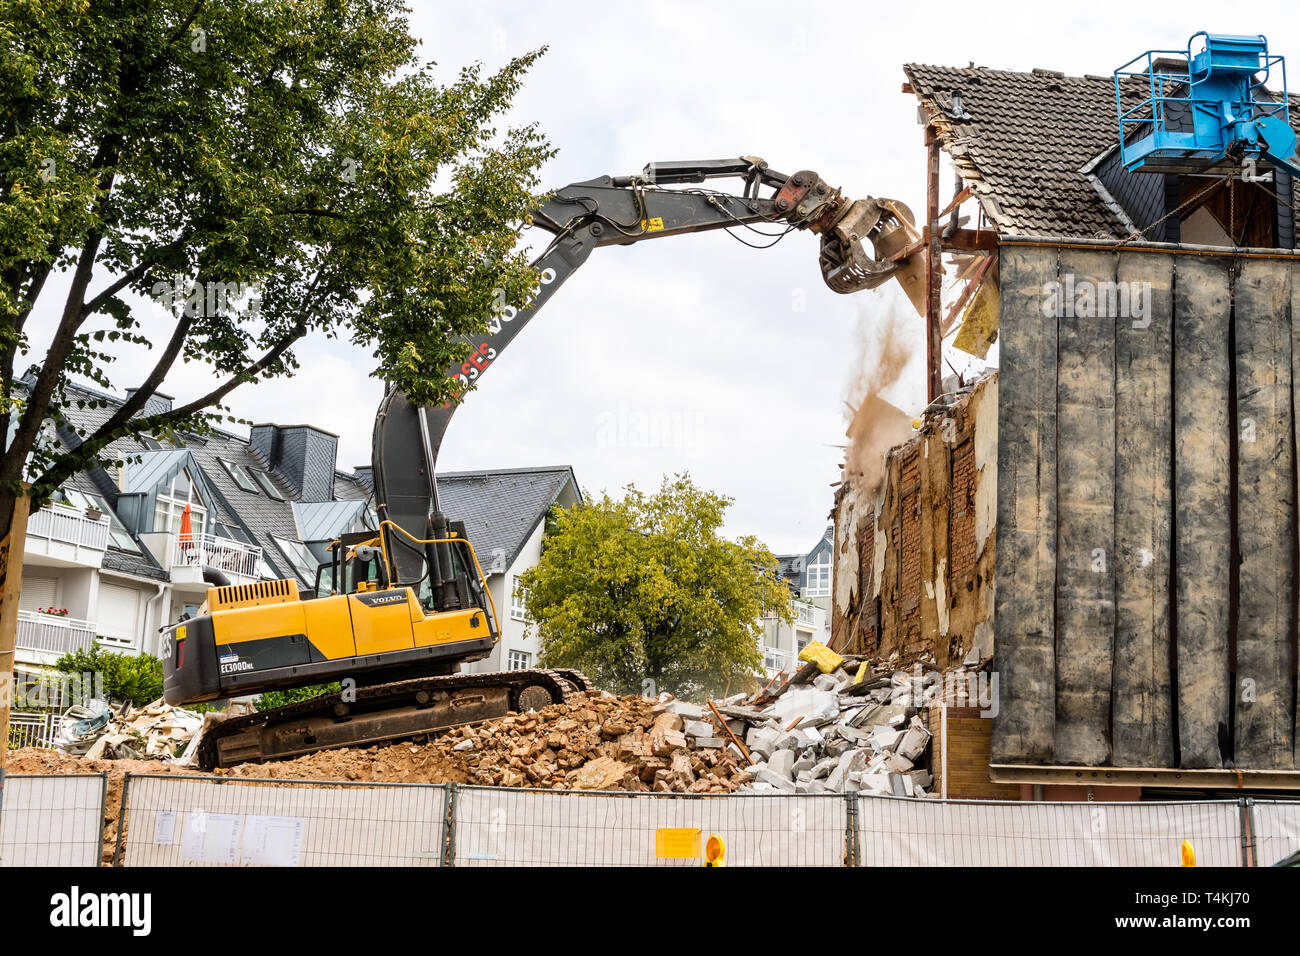 Travailler à la pelle la démolition d'une maison, construction site - 15 août 2018, Idstein (Taunus), Hesse, Germany, Europe Banque D'Images